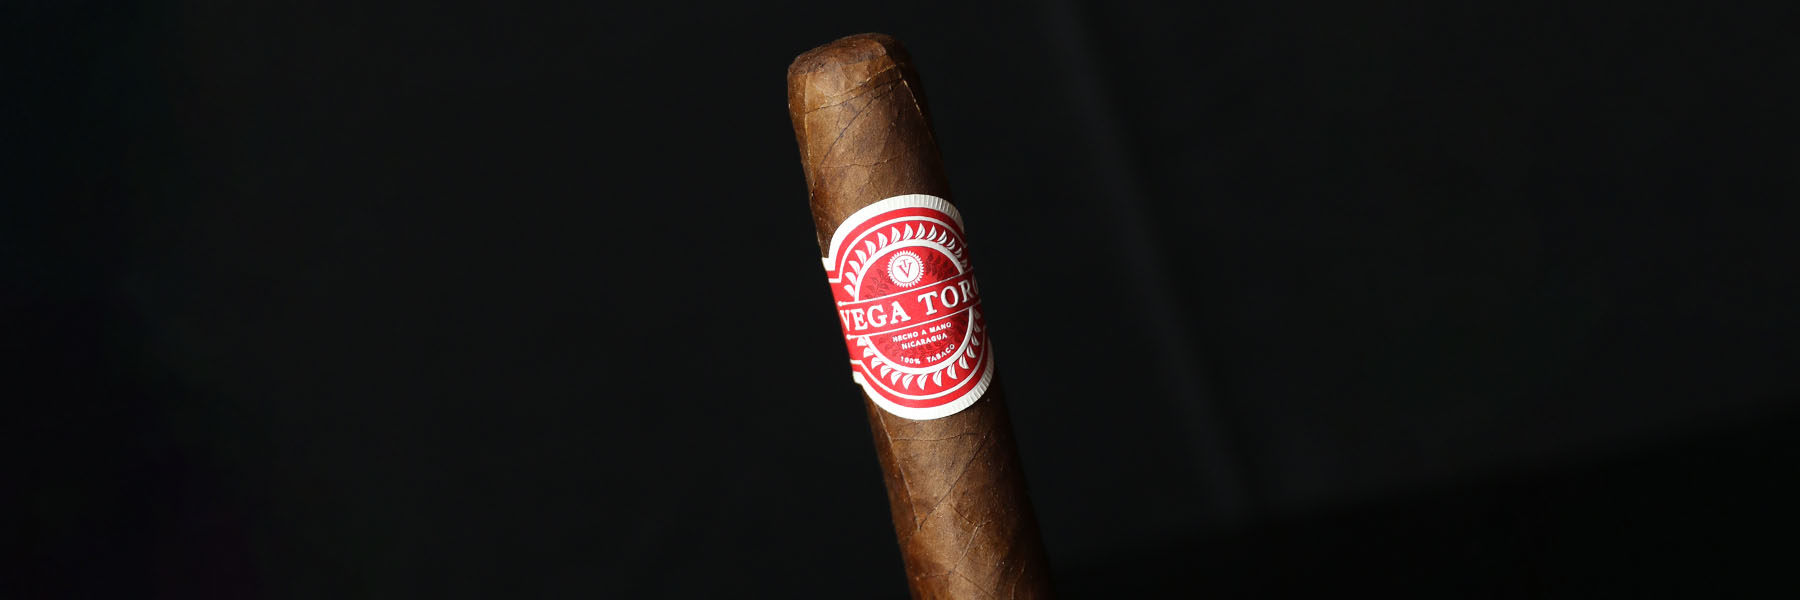 Vega Toro Cigars